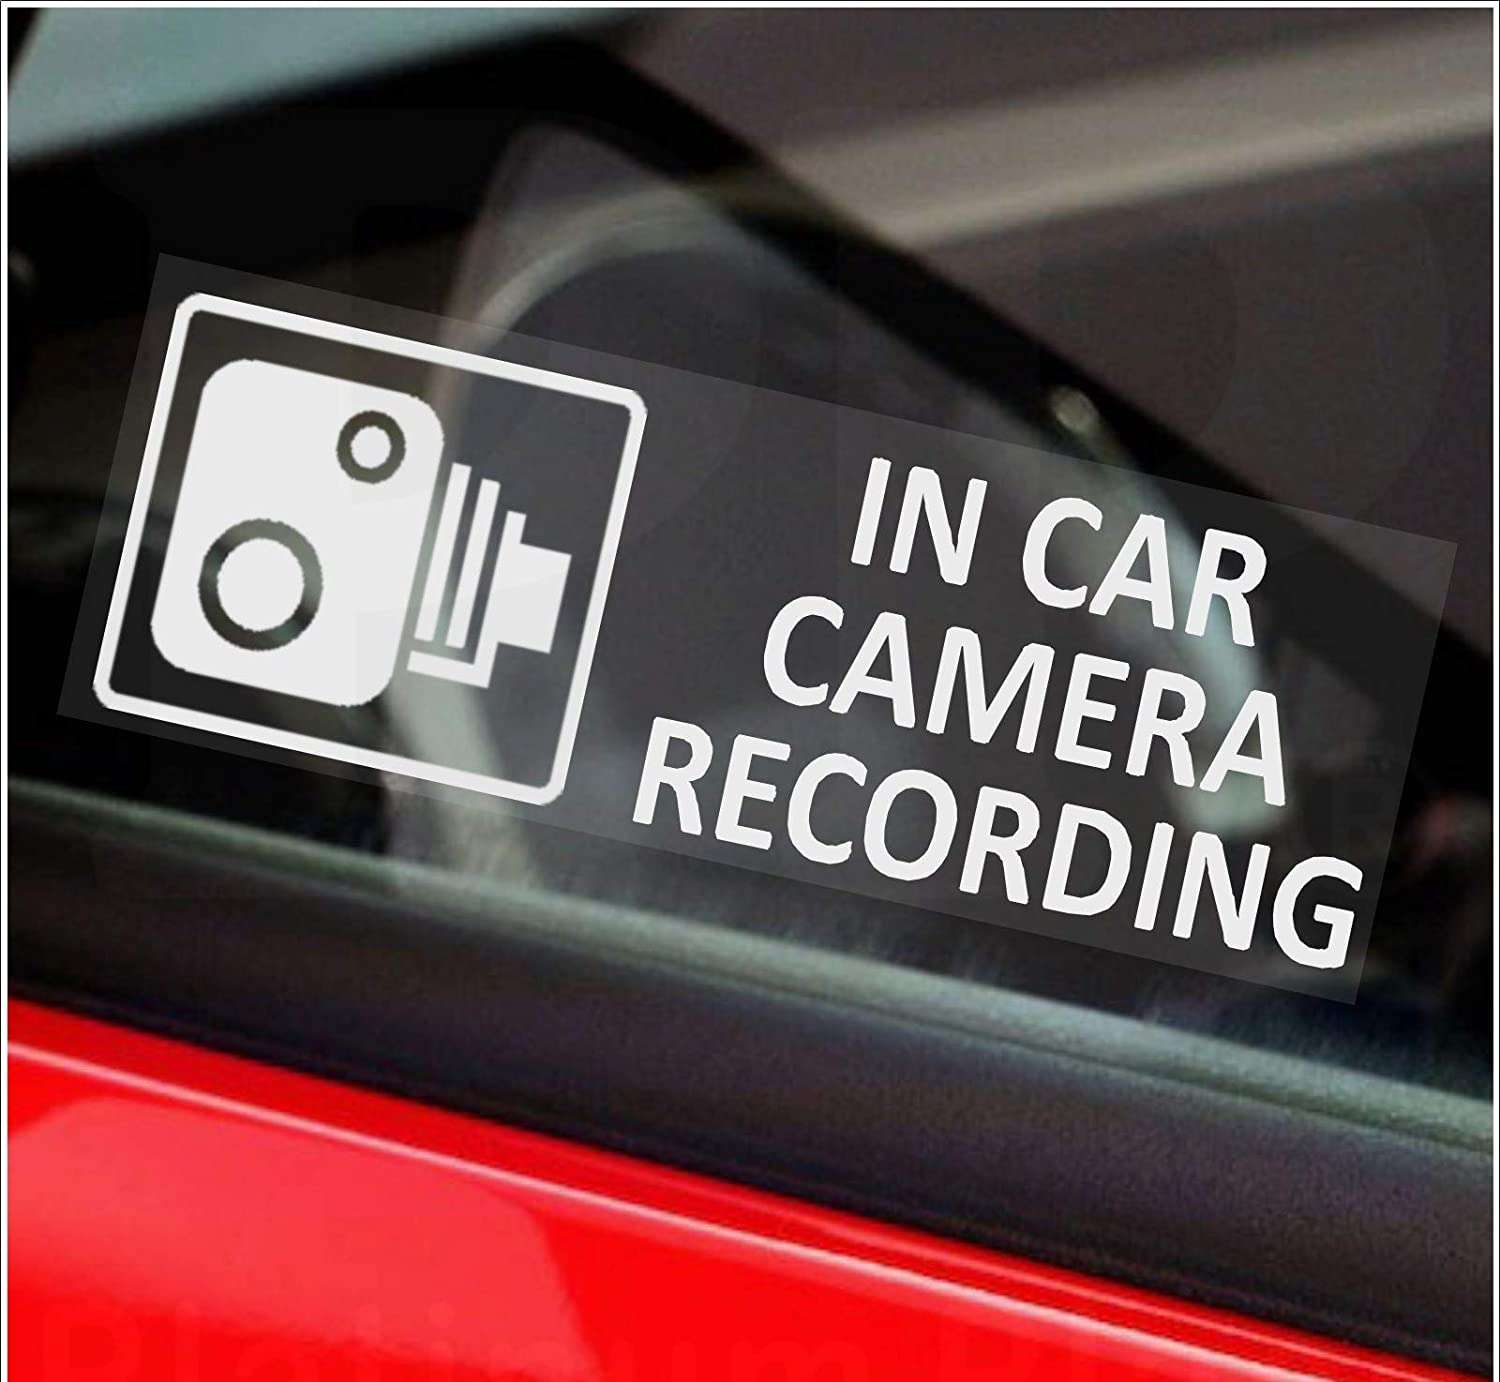 Adesivo per auto con telecamera fissa di registrazione bianco - 76x25mm - finestrino interno